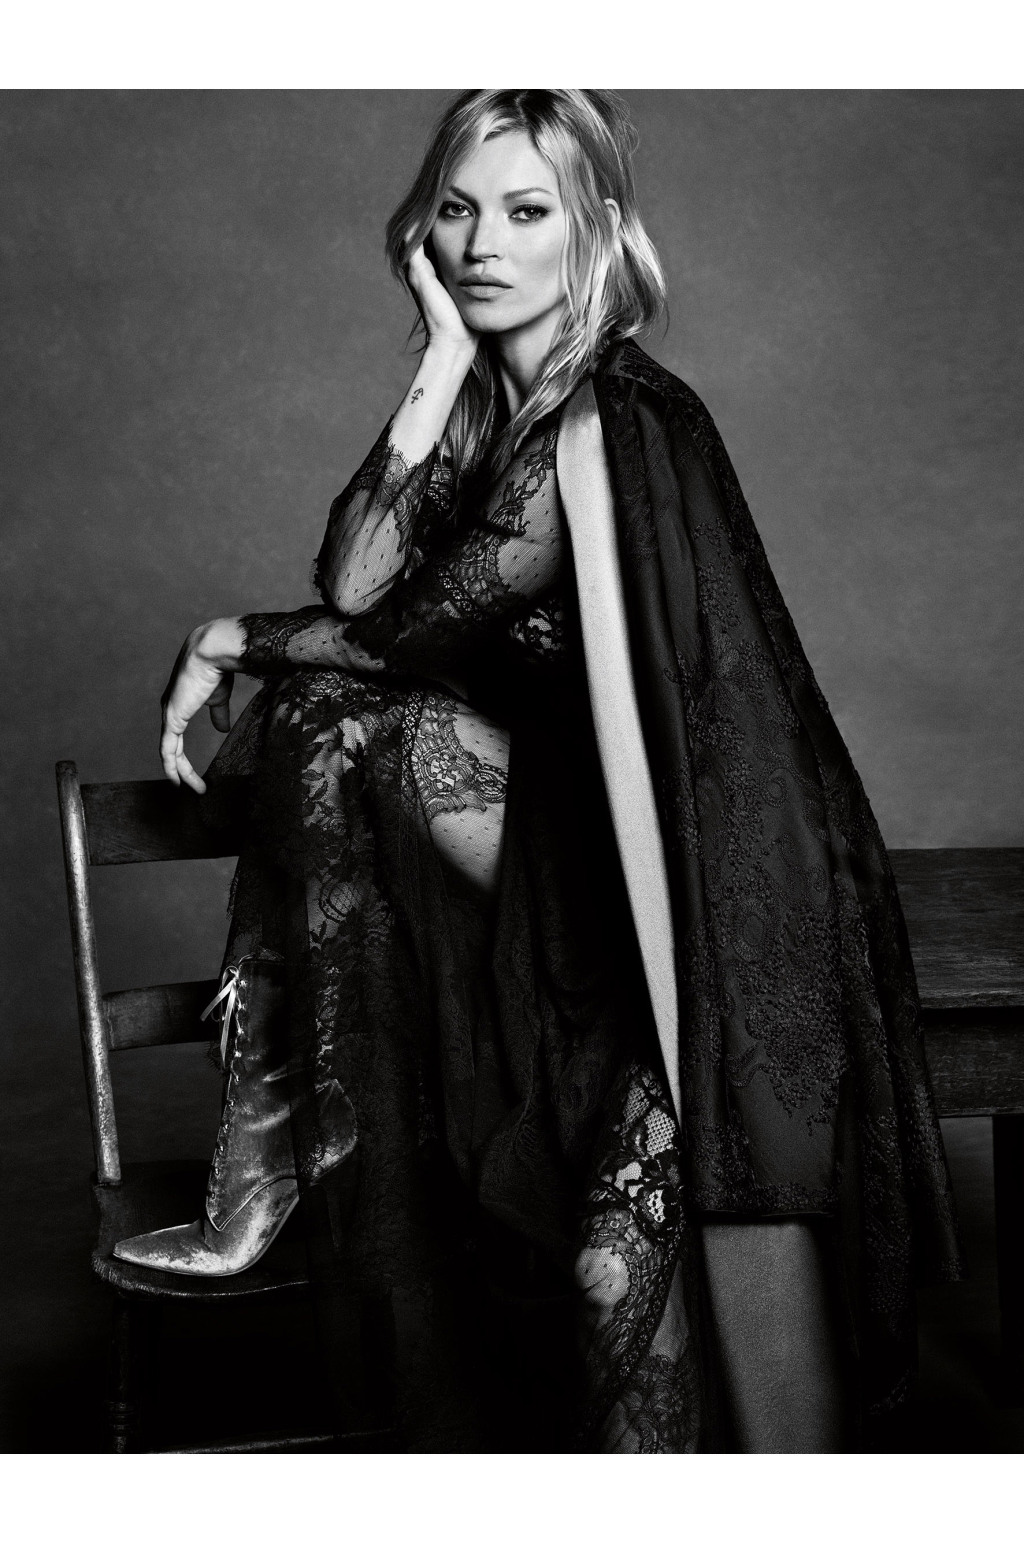 Kate Moss for Alberta Ferretti's fall campaign.